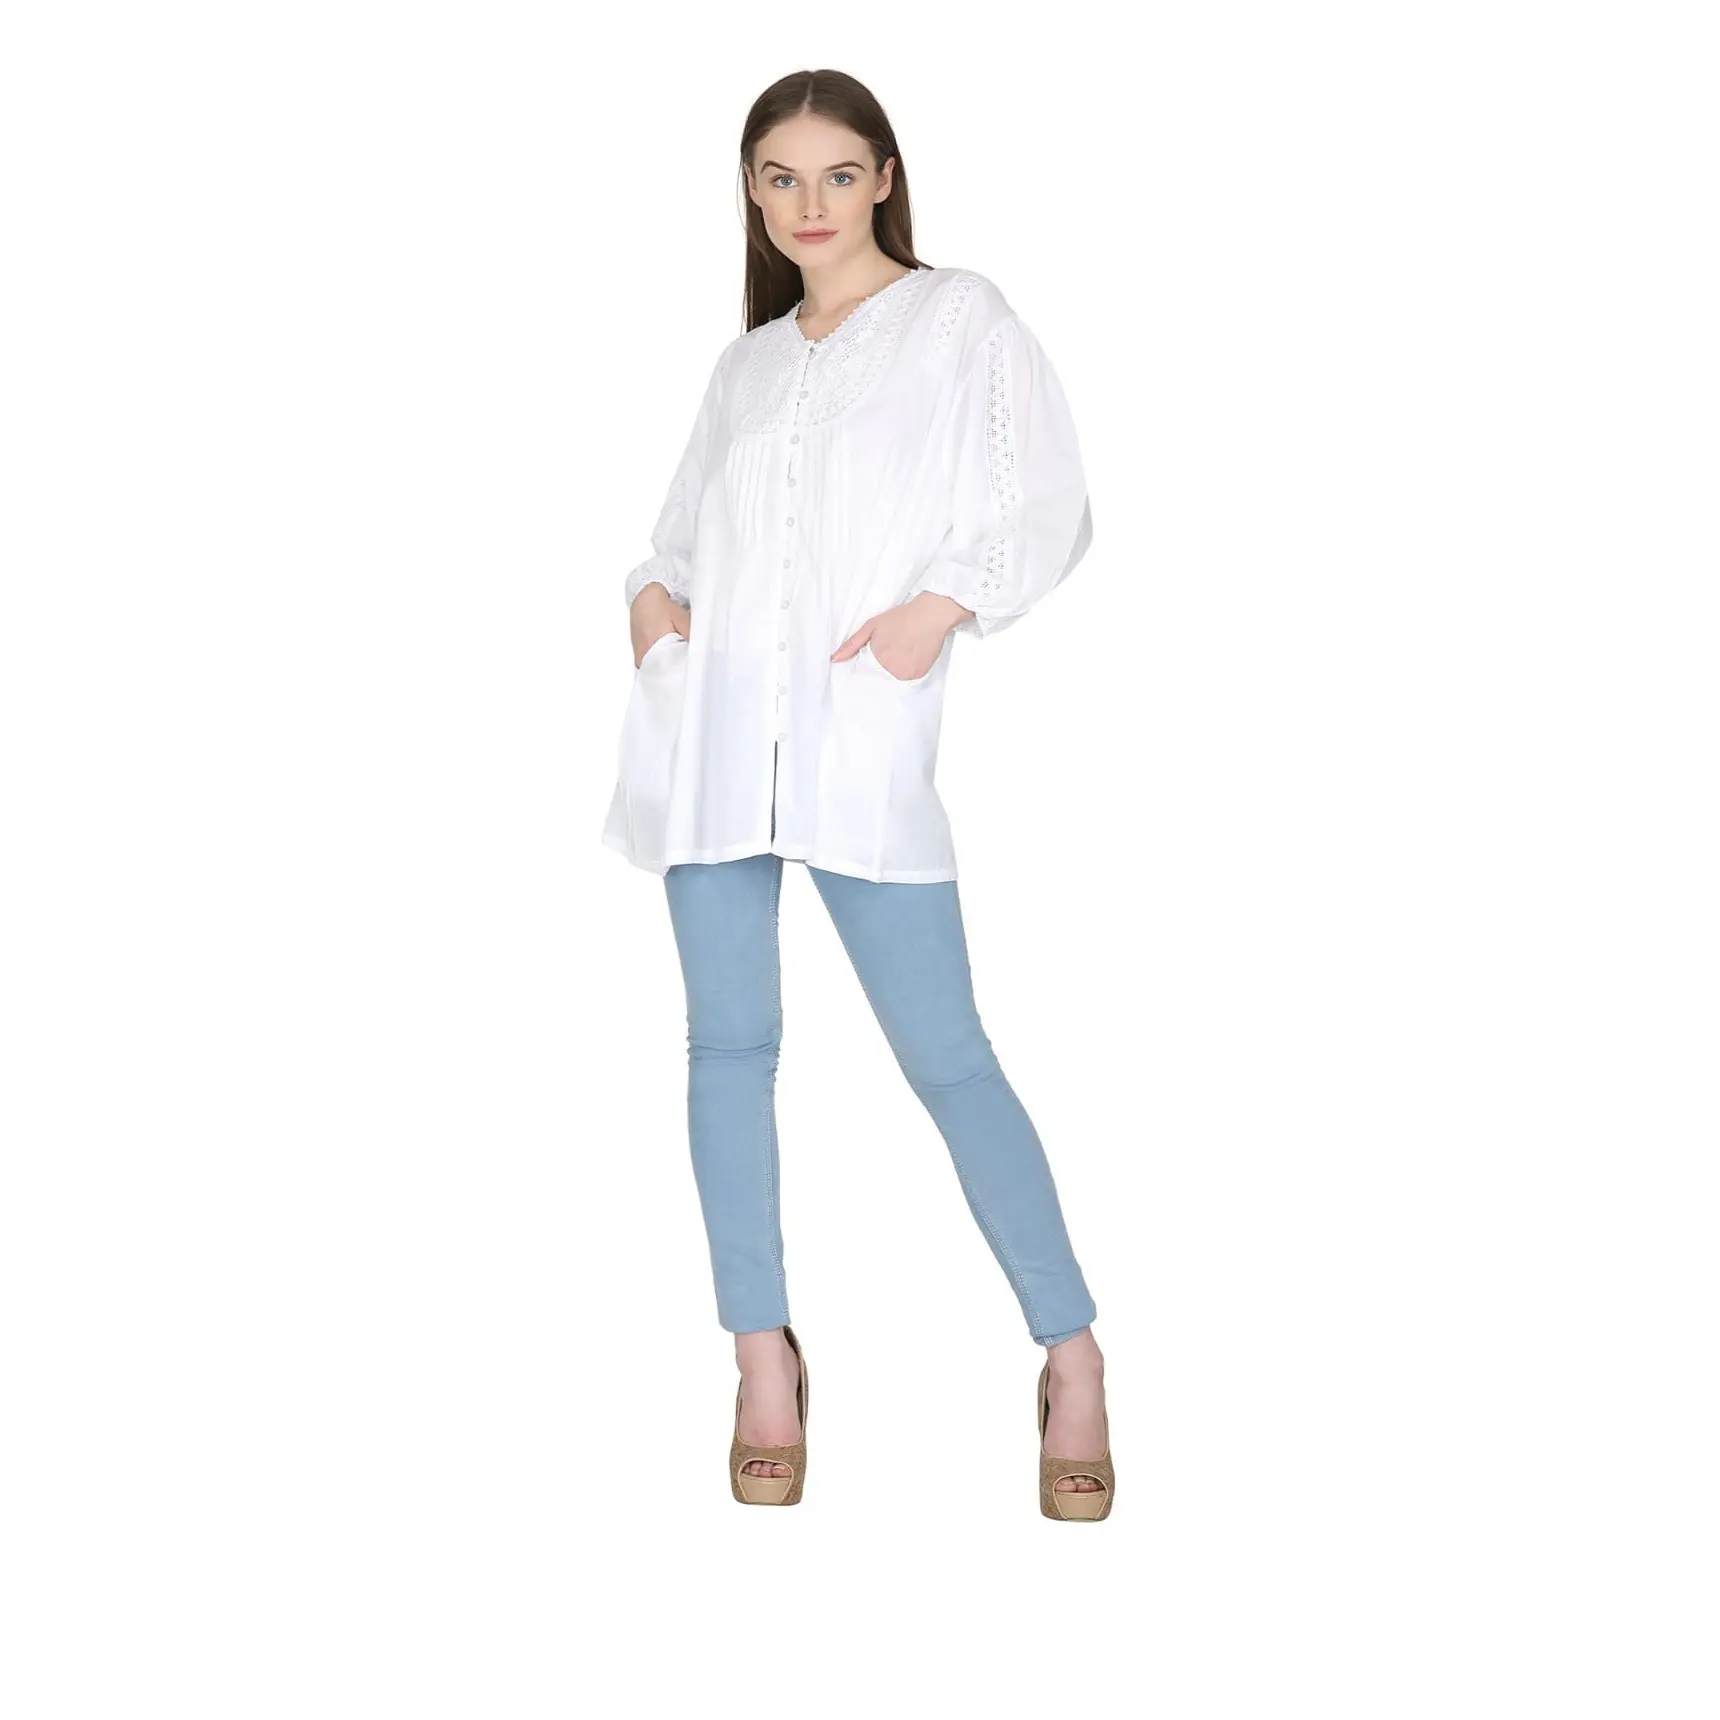 Chemisier blanc à manches longues pour femme, avec poche en dentelle, tenue tendance, fabrication en inde, 2020